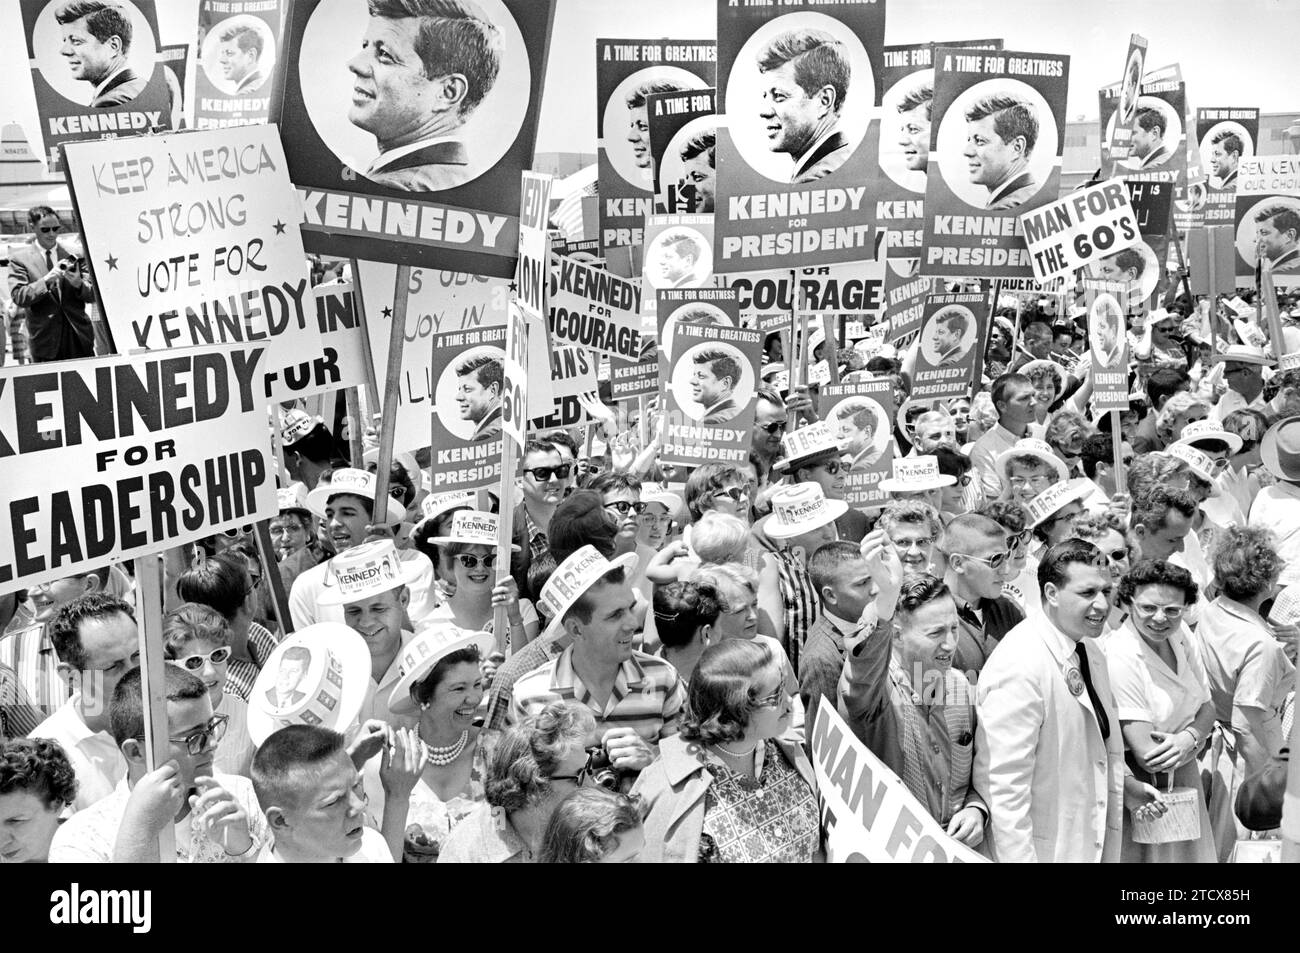 Partisans du sénateur américain John F. Kennedy avec des pancartes à l'aéroport lors de la Convention démocrate de 1960, Los Angeles, Californie, USA, Warren K. Leffler, U.S. News & World Report Magazine Photography Collection, 9 juillet 1960 Banque D'Images